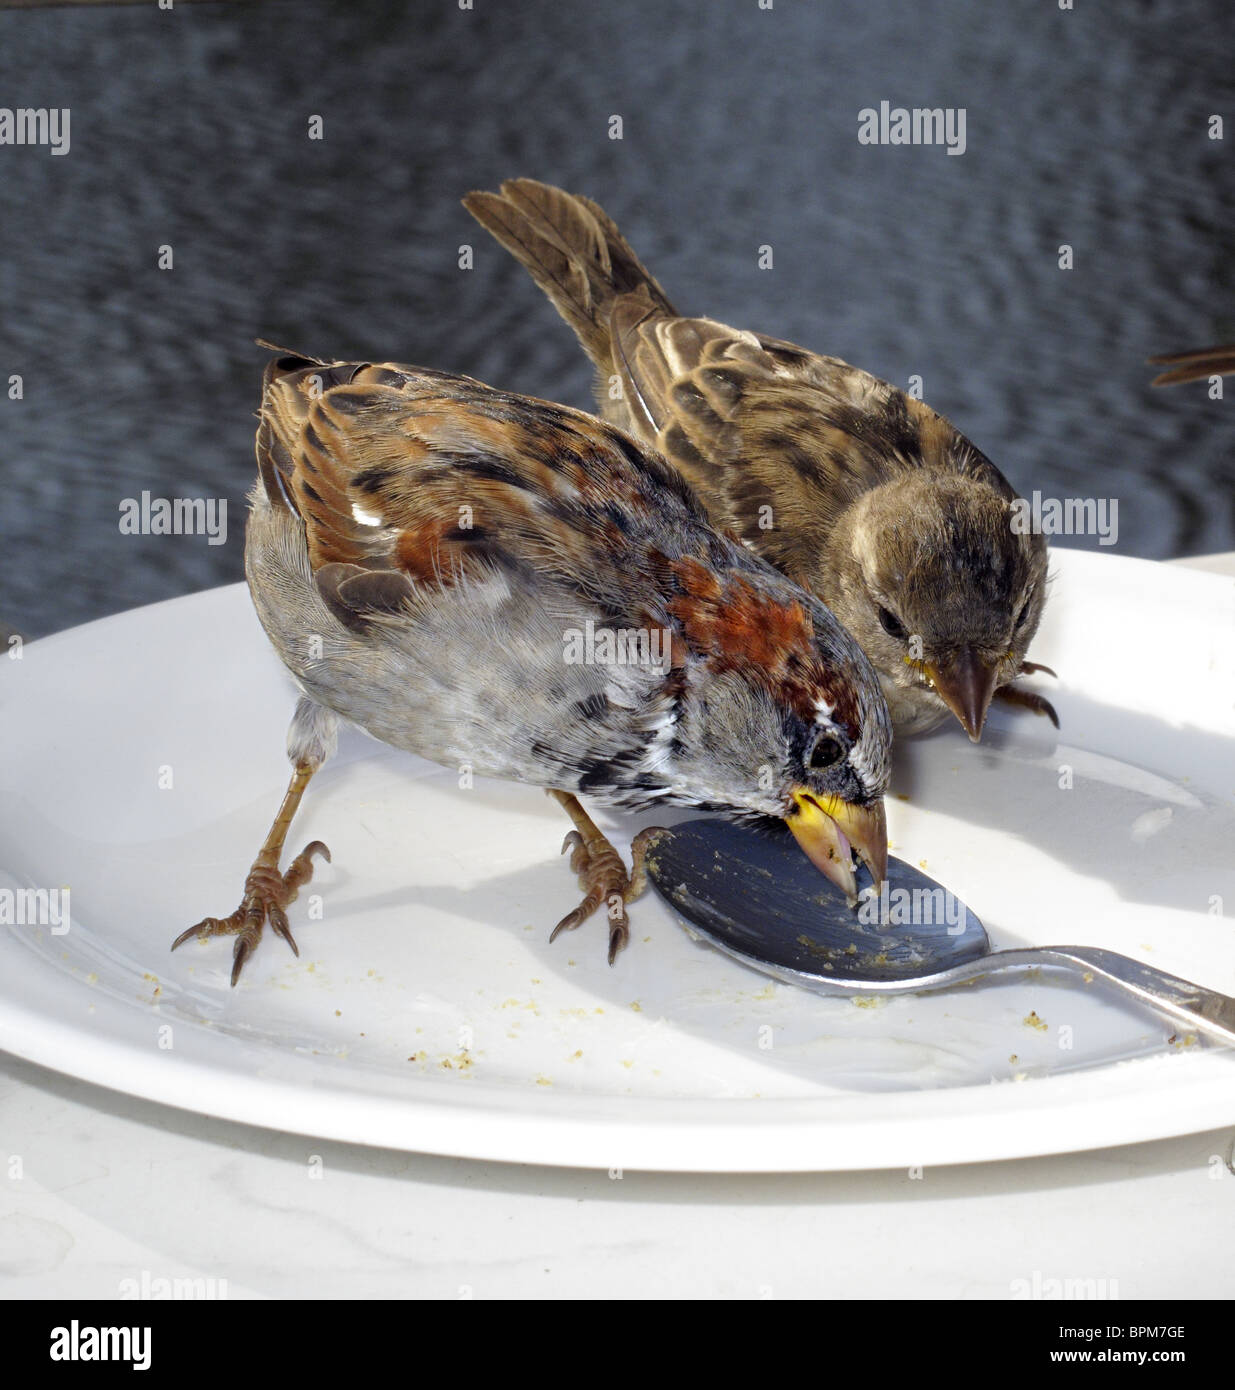 Sperlinge picken auf Kuchen Krümel auf einem Teller. Stockfoto